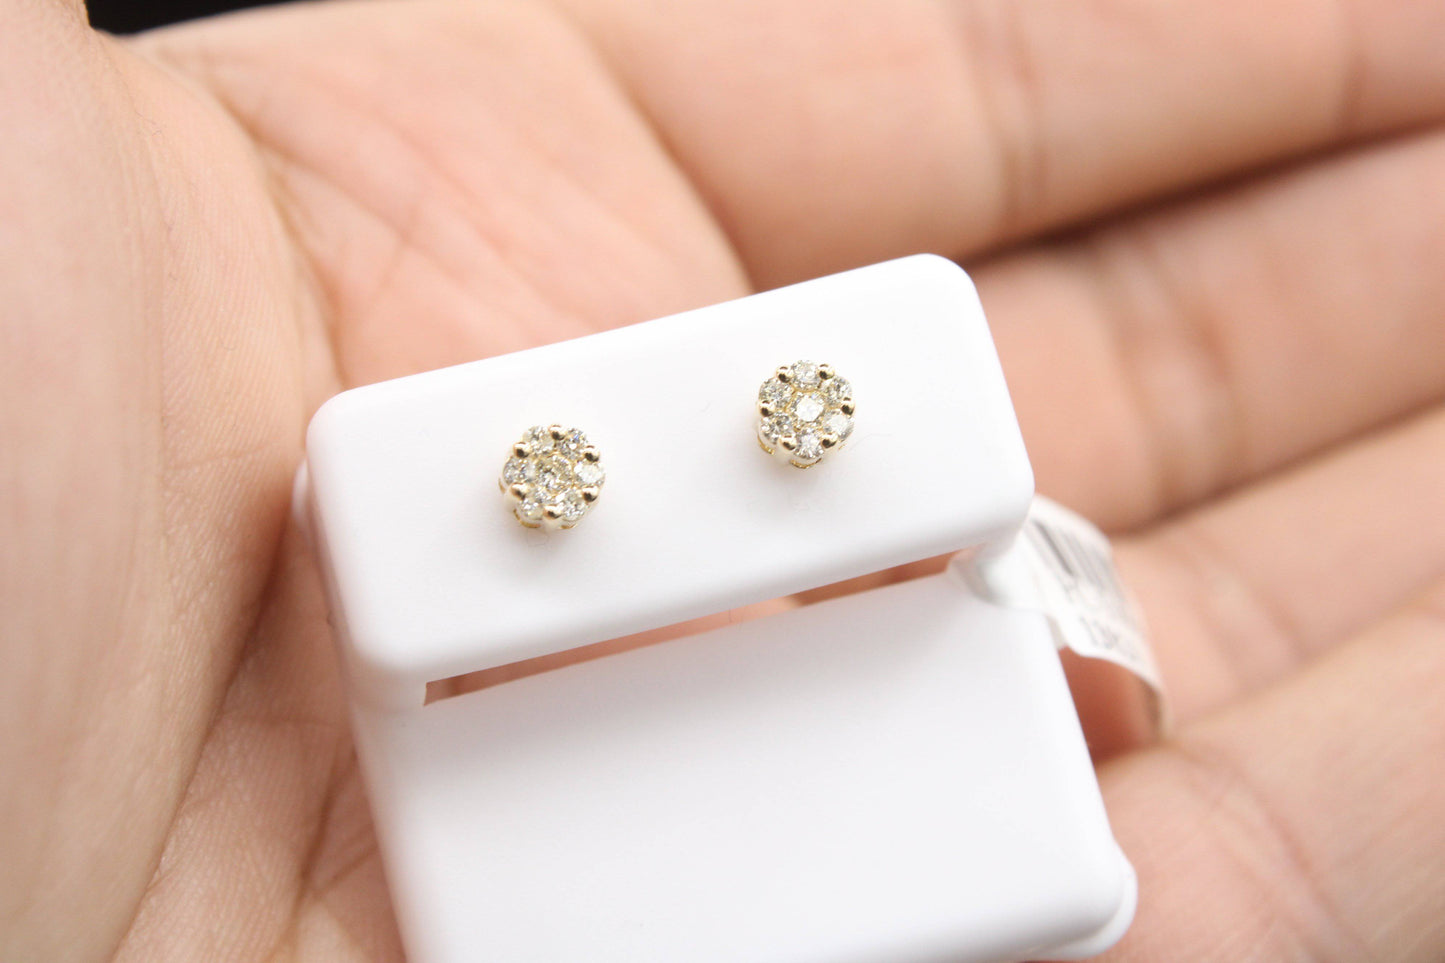 Gold Diamond earrings on sale